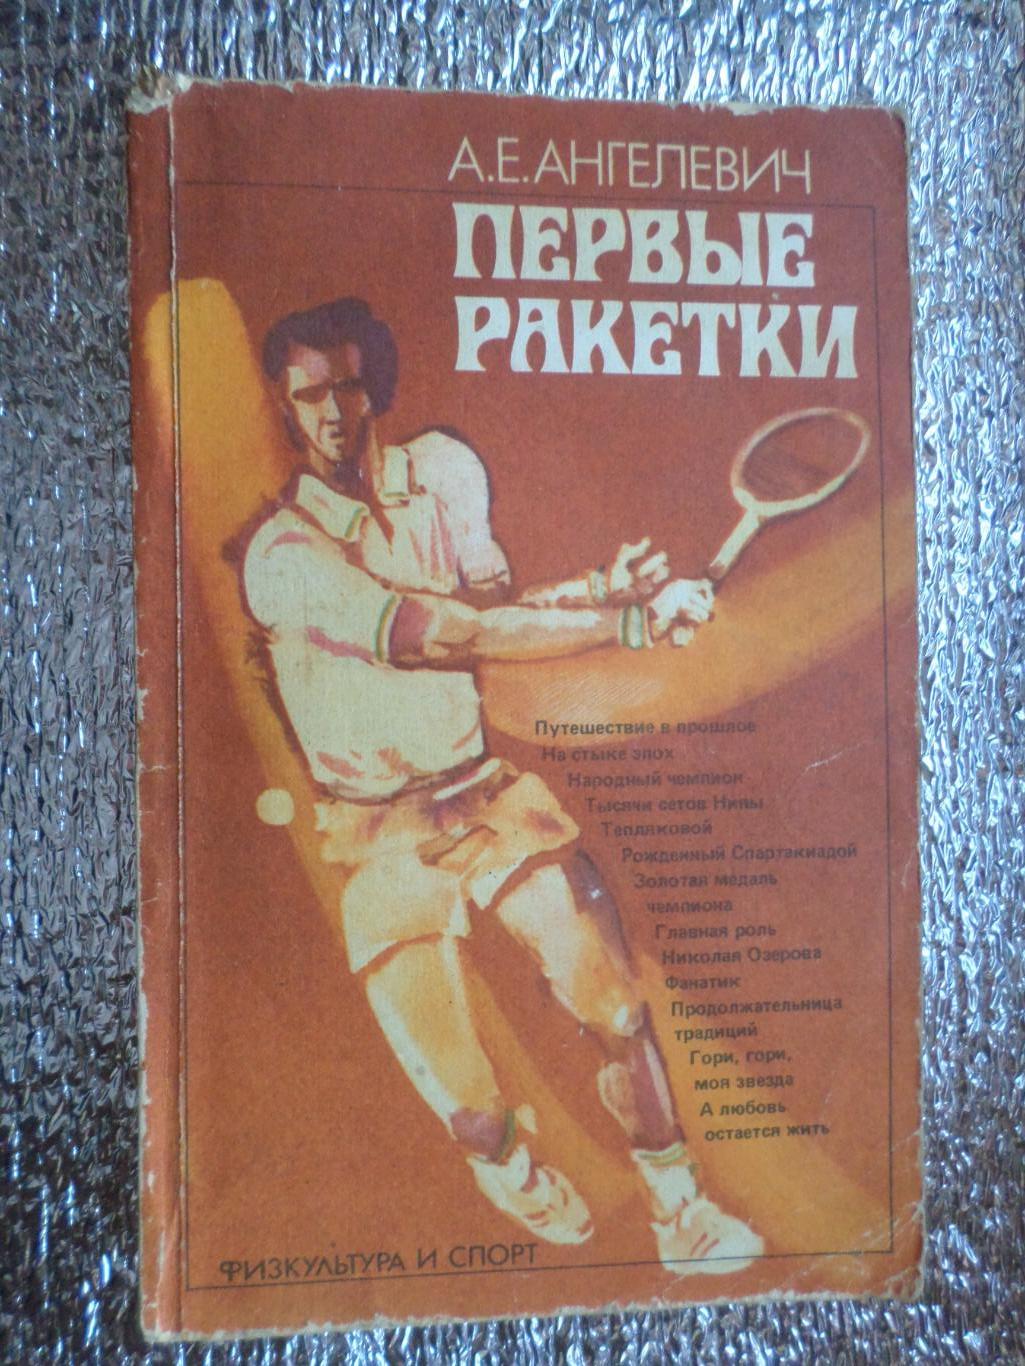 Ангелевич - Первые ракетки 1985 г